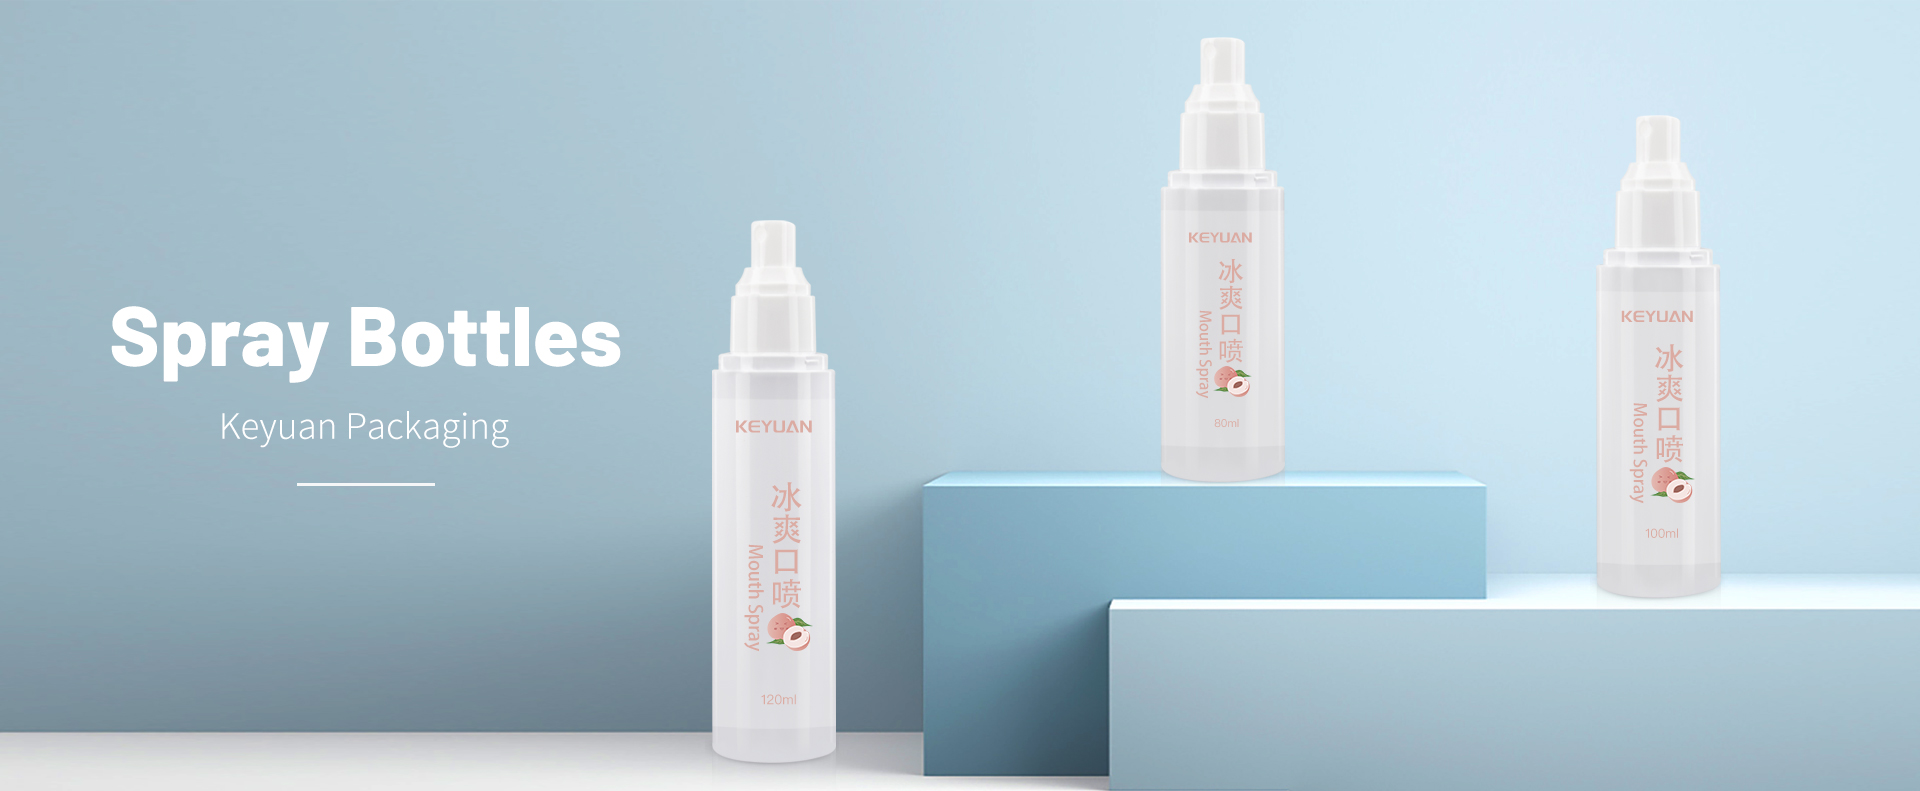 KY064 Food Grade Mouth Spray Cleanser Bottles 80ml 100ml 120ml Plastic Bottle PET UV Lids